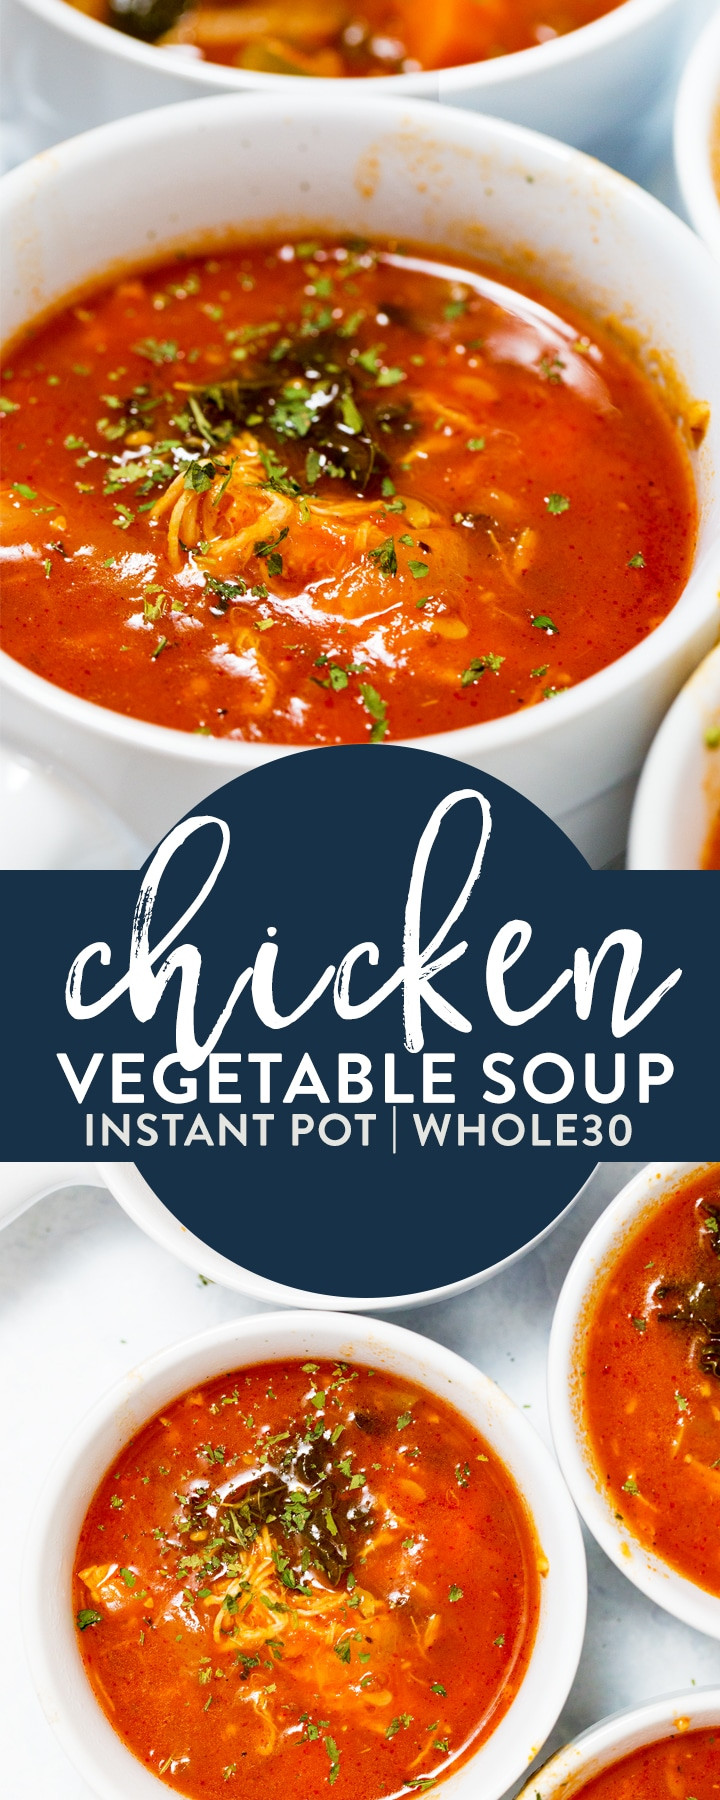 Instant Pot Healthy Soup Recipes
 Instant Pot Chicken Ve able Soup